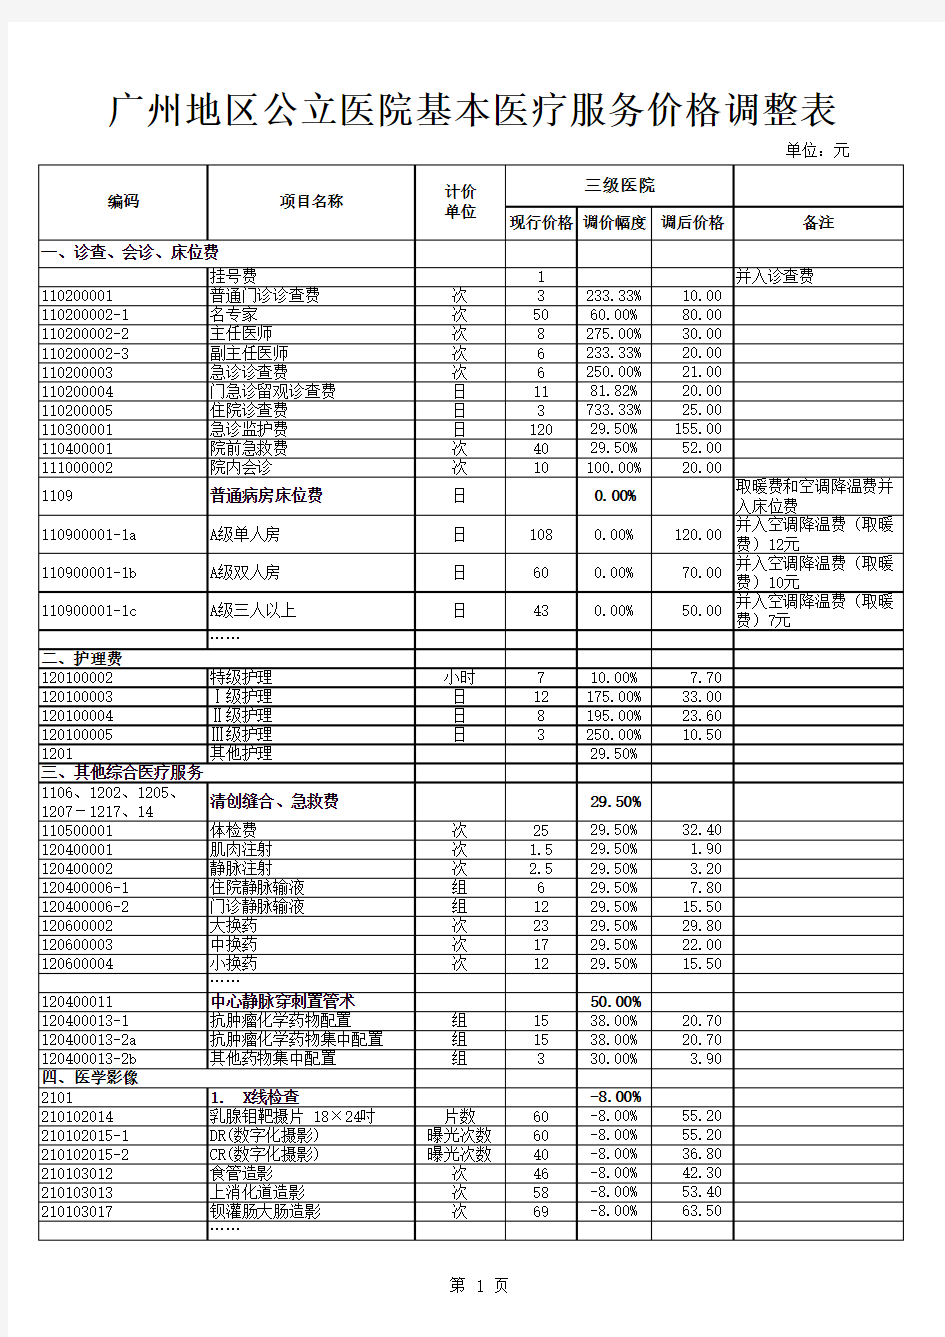 2017广州地区公立医院基本医疗服务价格调整表